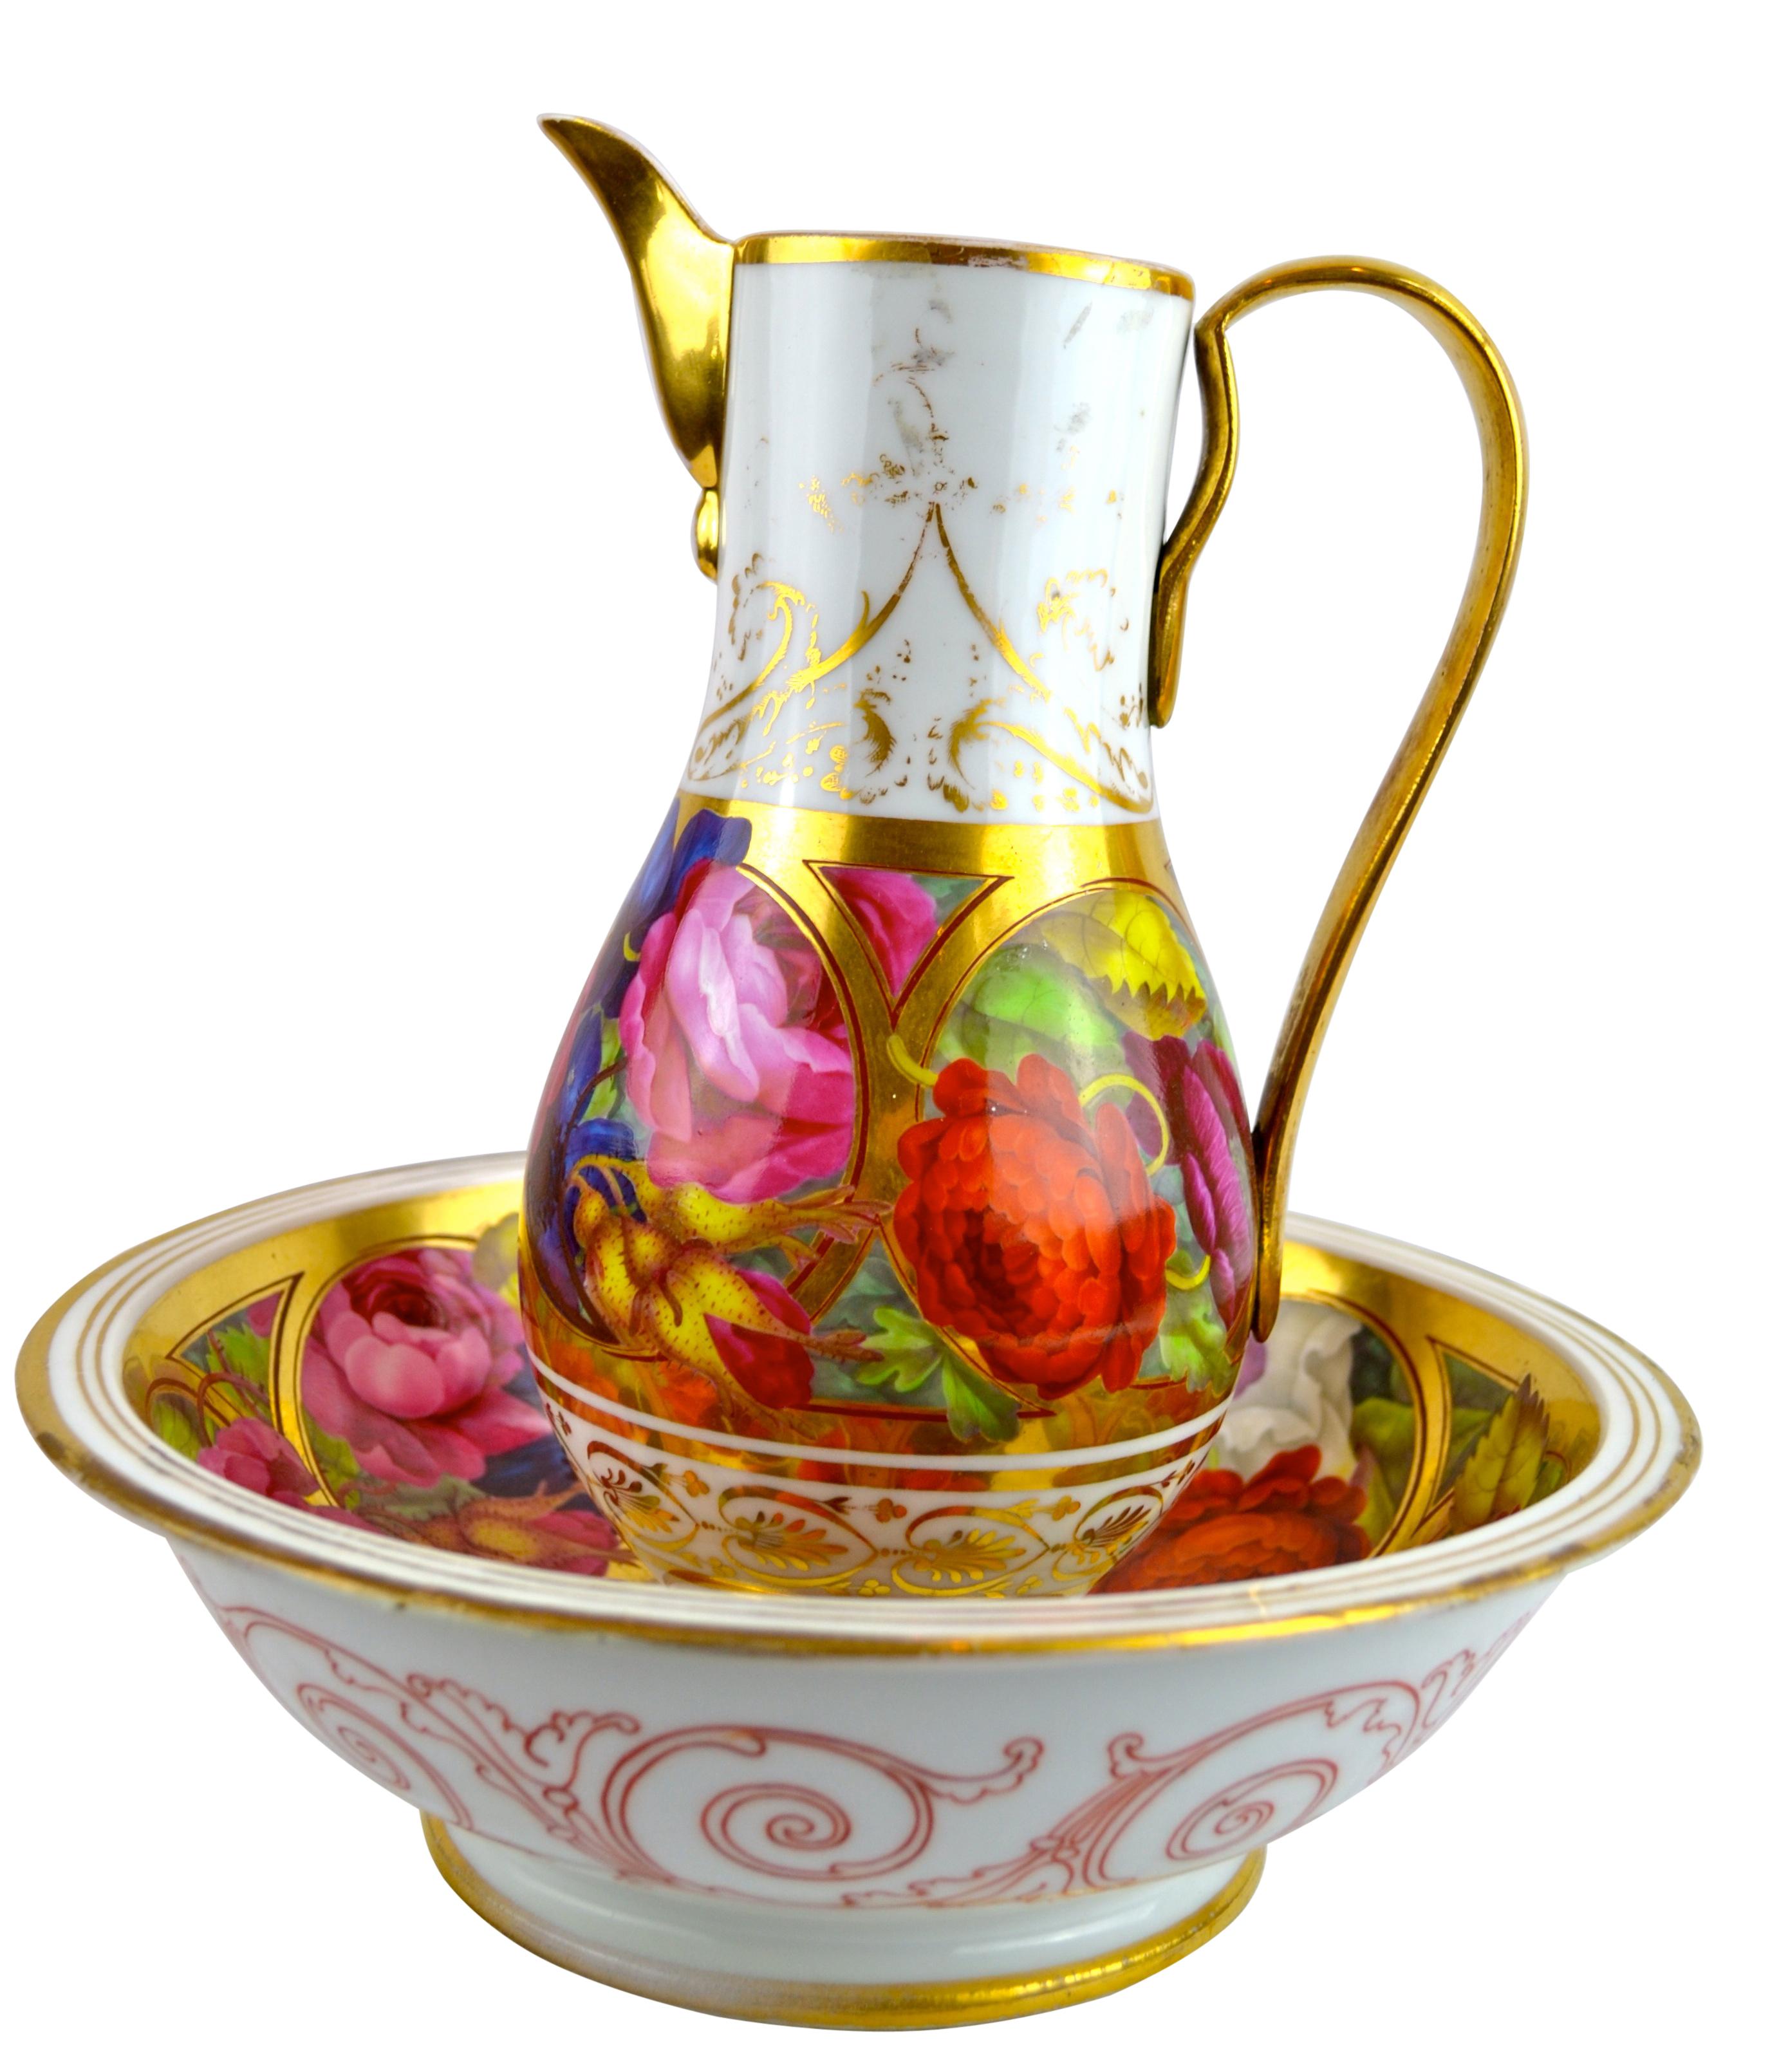 Une aiguière en porcelaine de Paris (le fleuron est réparé) et un bassin assorti, tous deux ornés de fleurs peintes en couleurs vives ; quelques frottements sur l'aiguière.

 